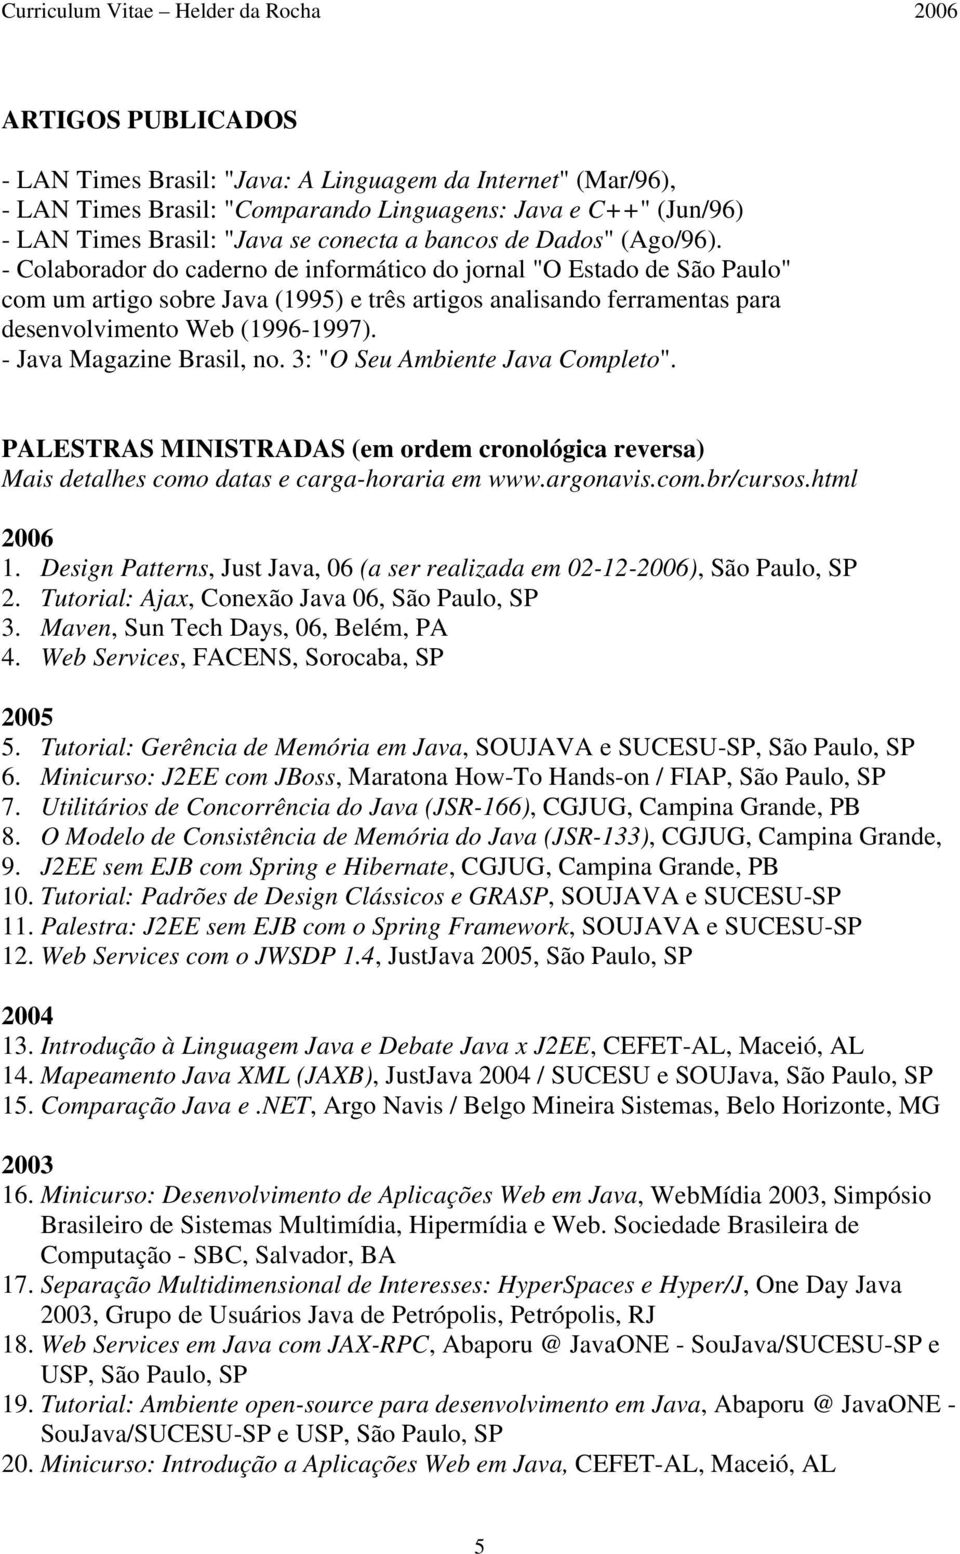 - Java Magazine Brasil, no. 3: "O Seu Ambiente Java Completo". PALESTRAS MINISTRADAS (em ordem cronológica reversa) Mais detalhes como datas e carga-horaria em www.argonavis.com.br/cursos.html 2006 1.